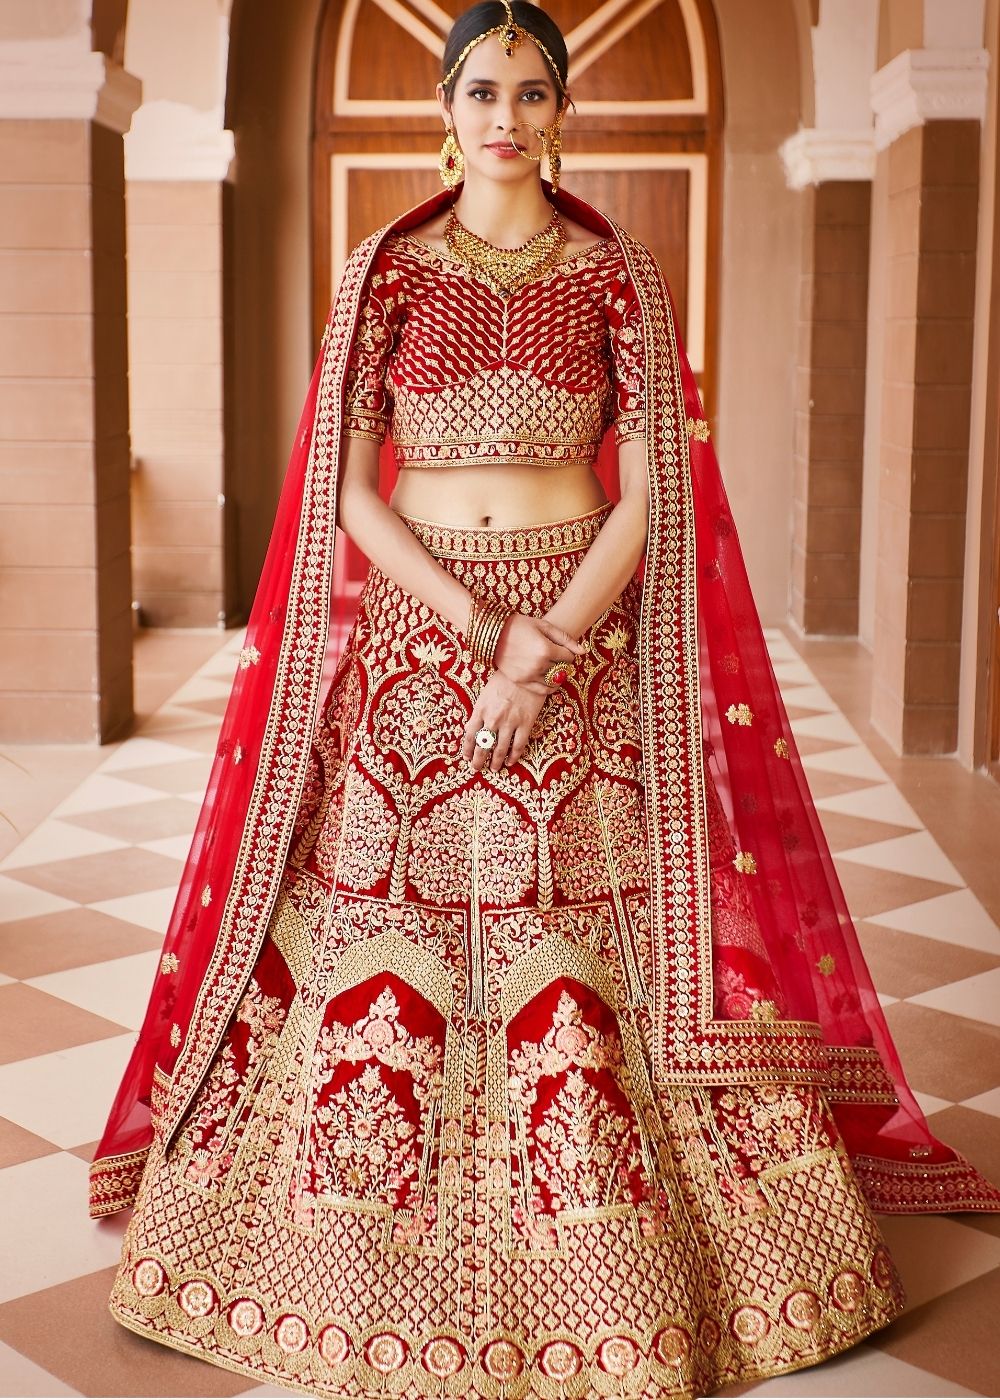 Rani Color Bridal Lehenga With Resham And Zari Hand Work at Rs 7582 |  Chandni Chowk | New Delhi | ID: 12471210162